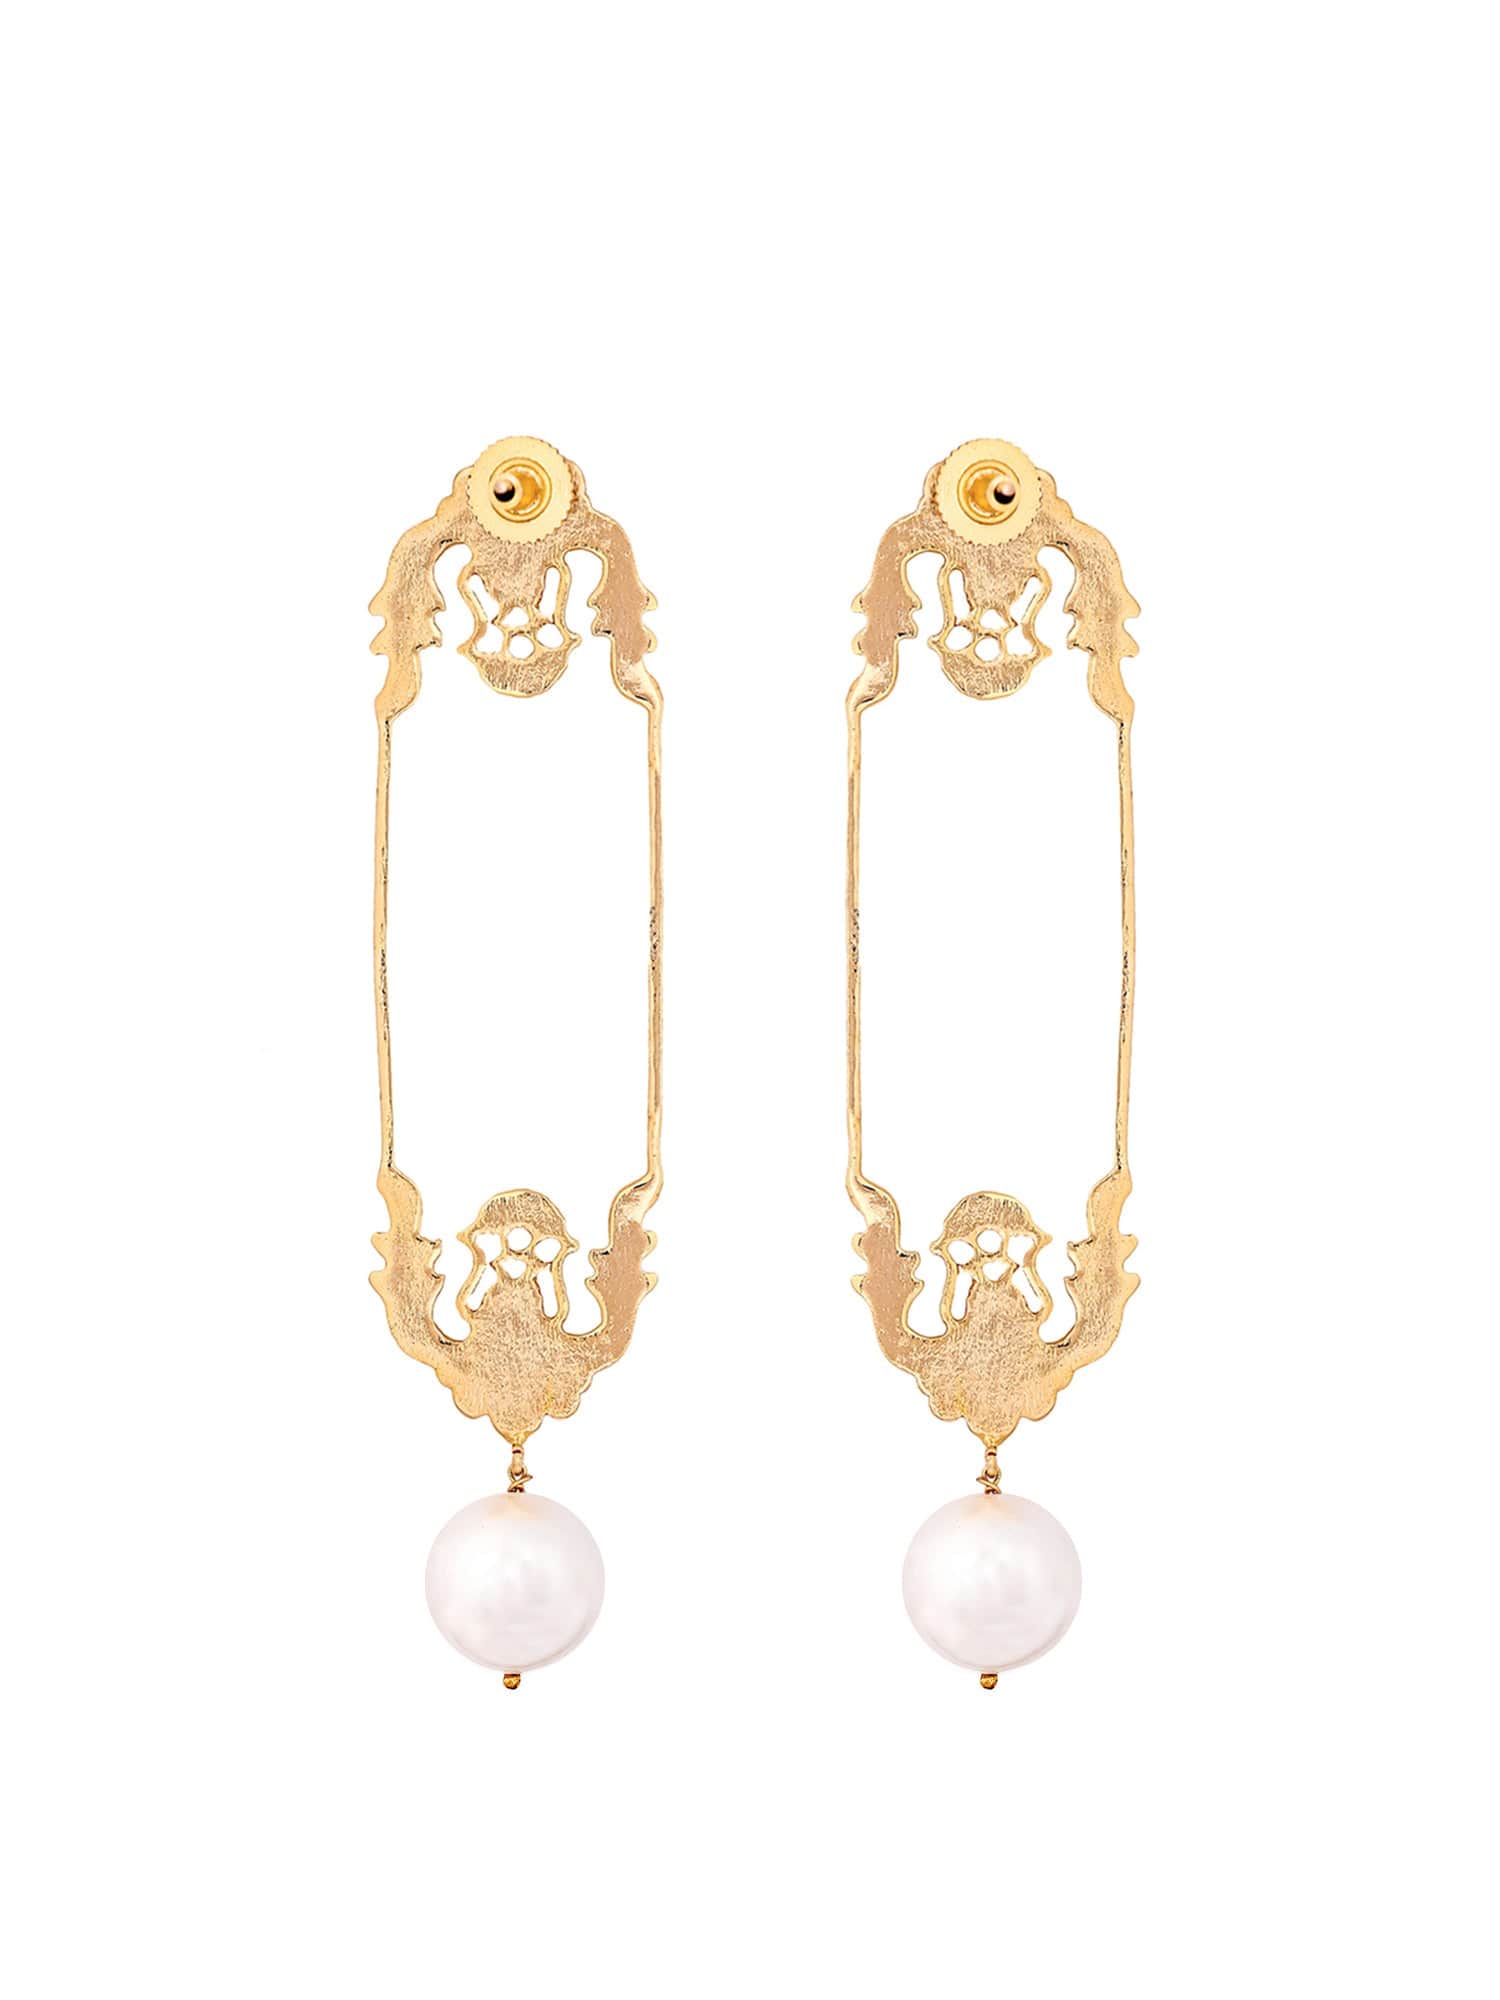 Les Tuileries earrings